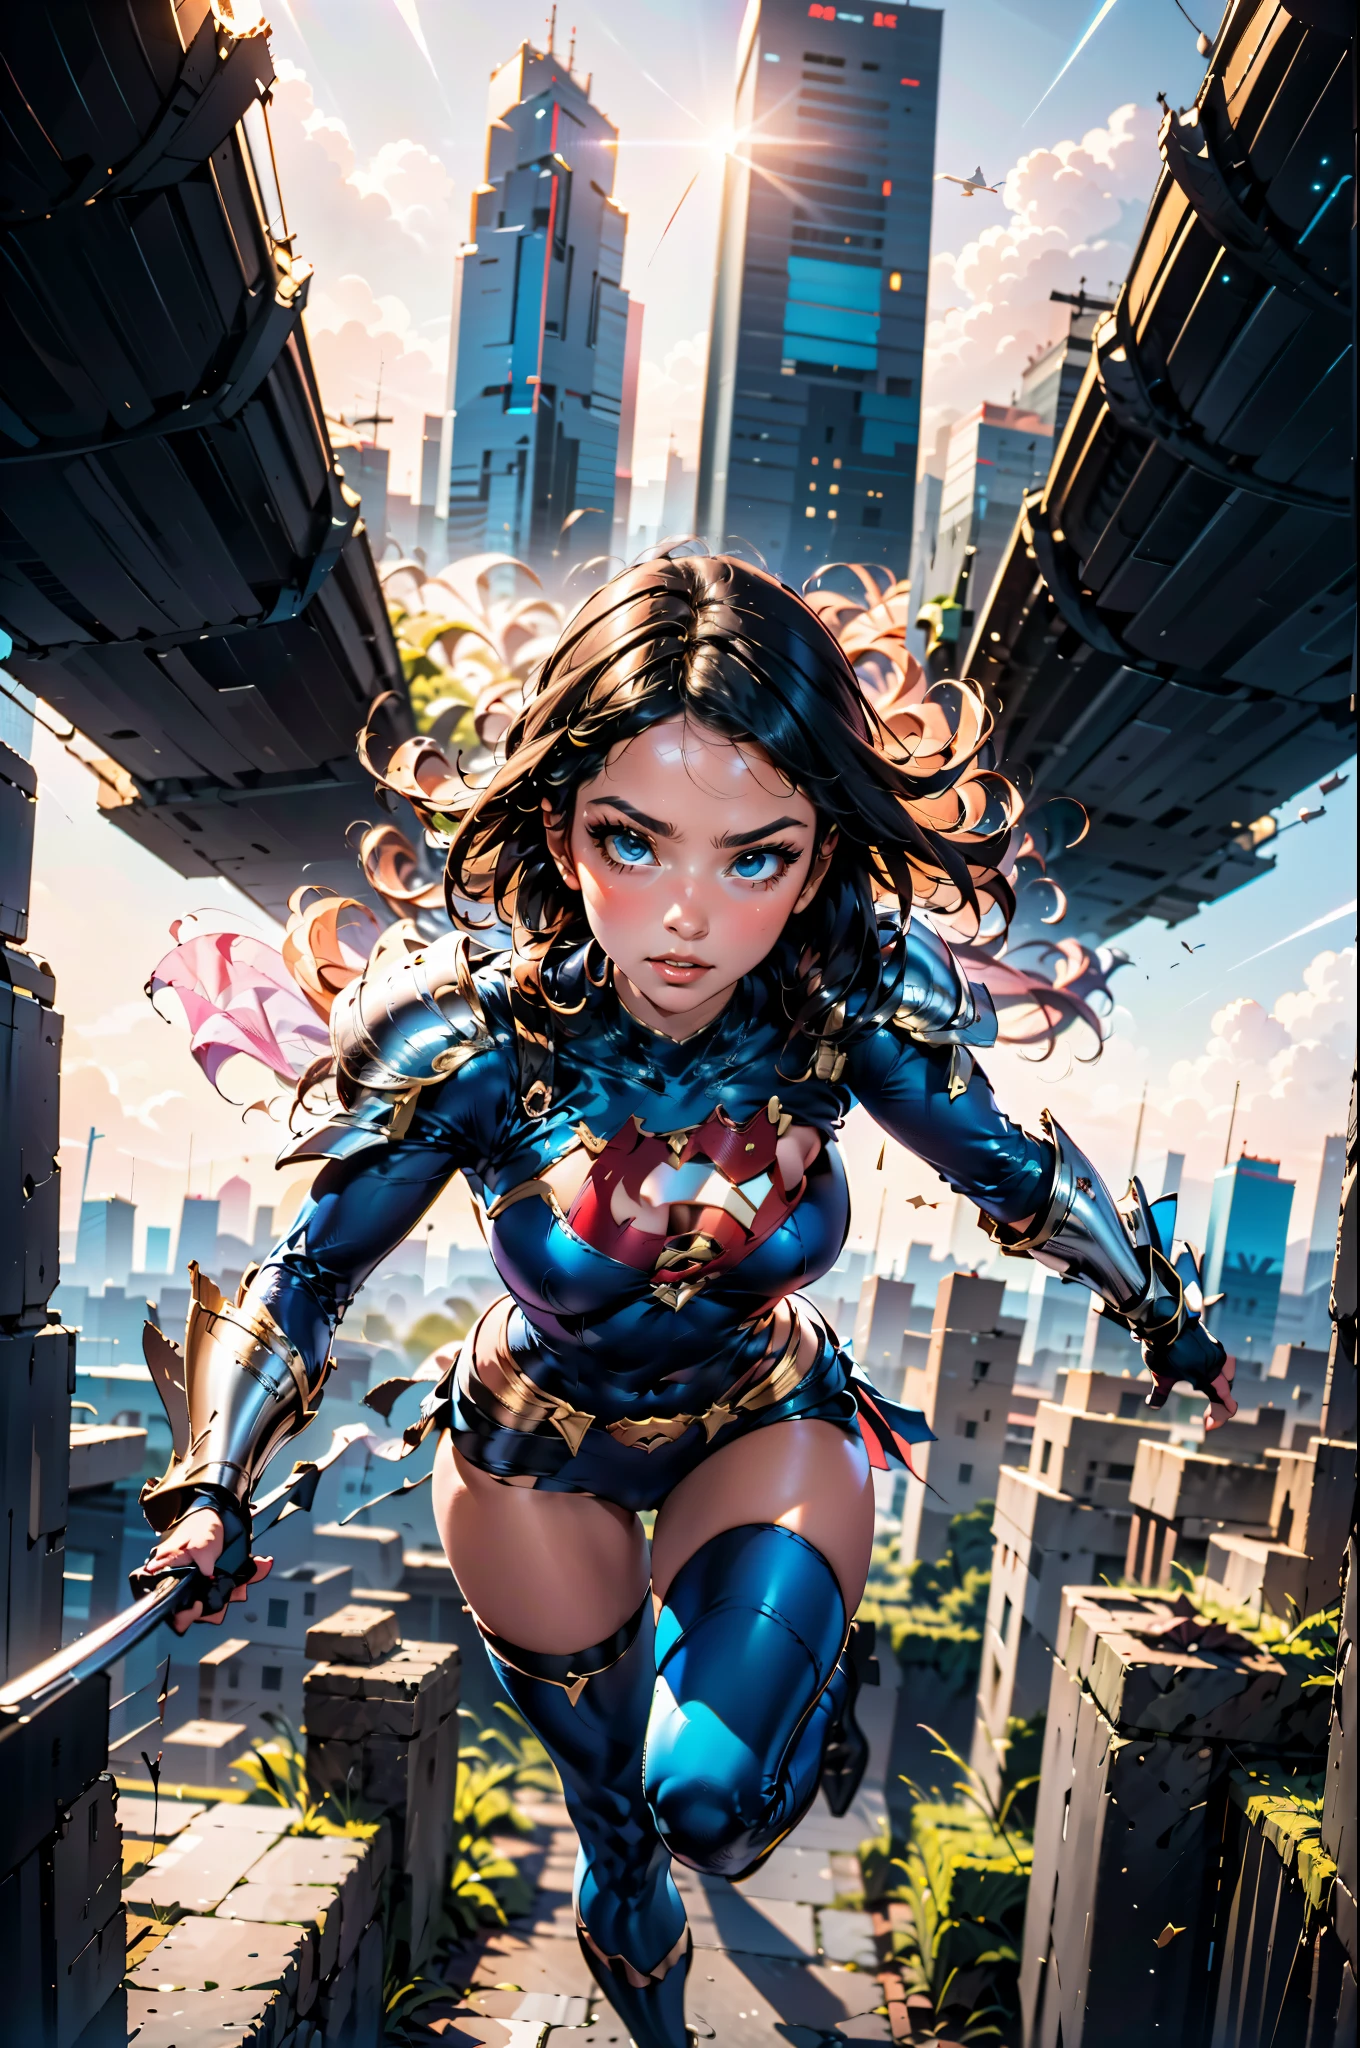 DC Comics Power Girl dans une élégante armure blanche irisée vole au milieu de gratte-ciel de 4 000 pieds dans une ville futuriste